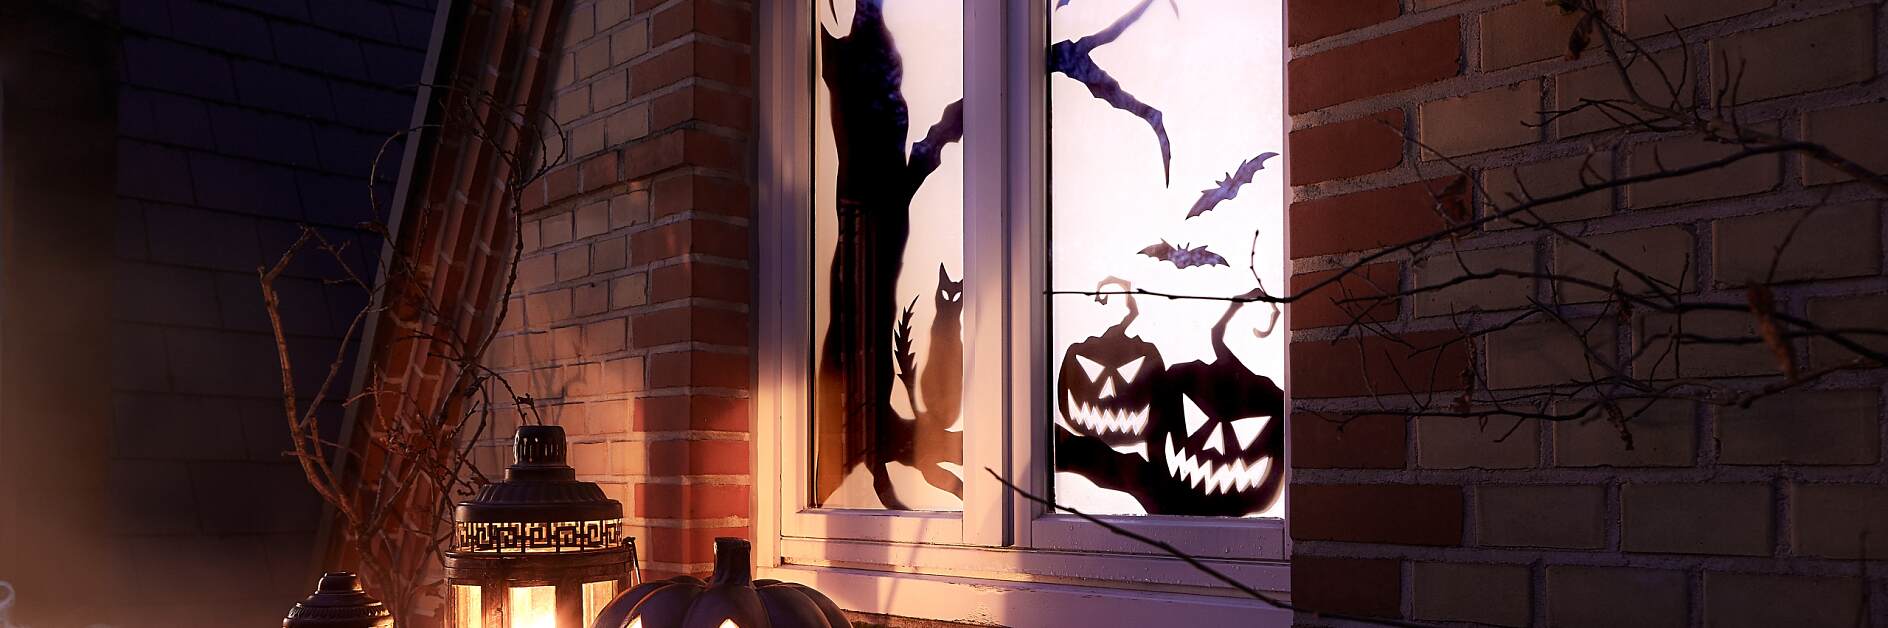 Dekoracja okienna na Halloween